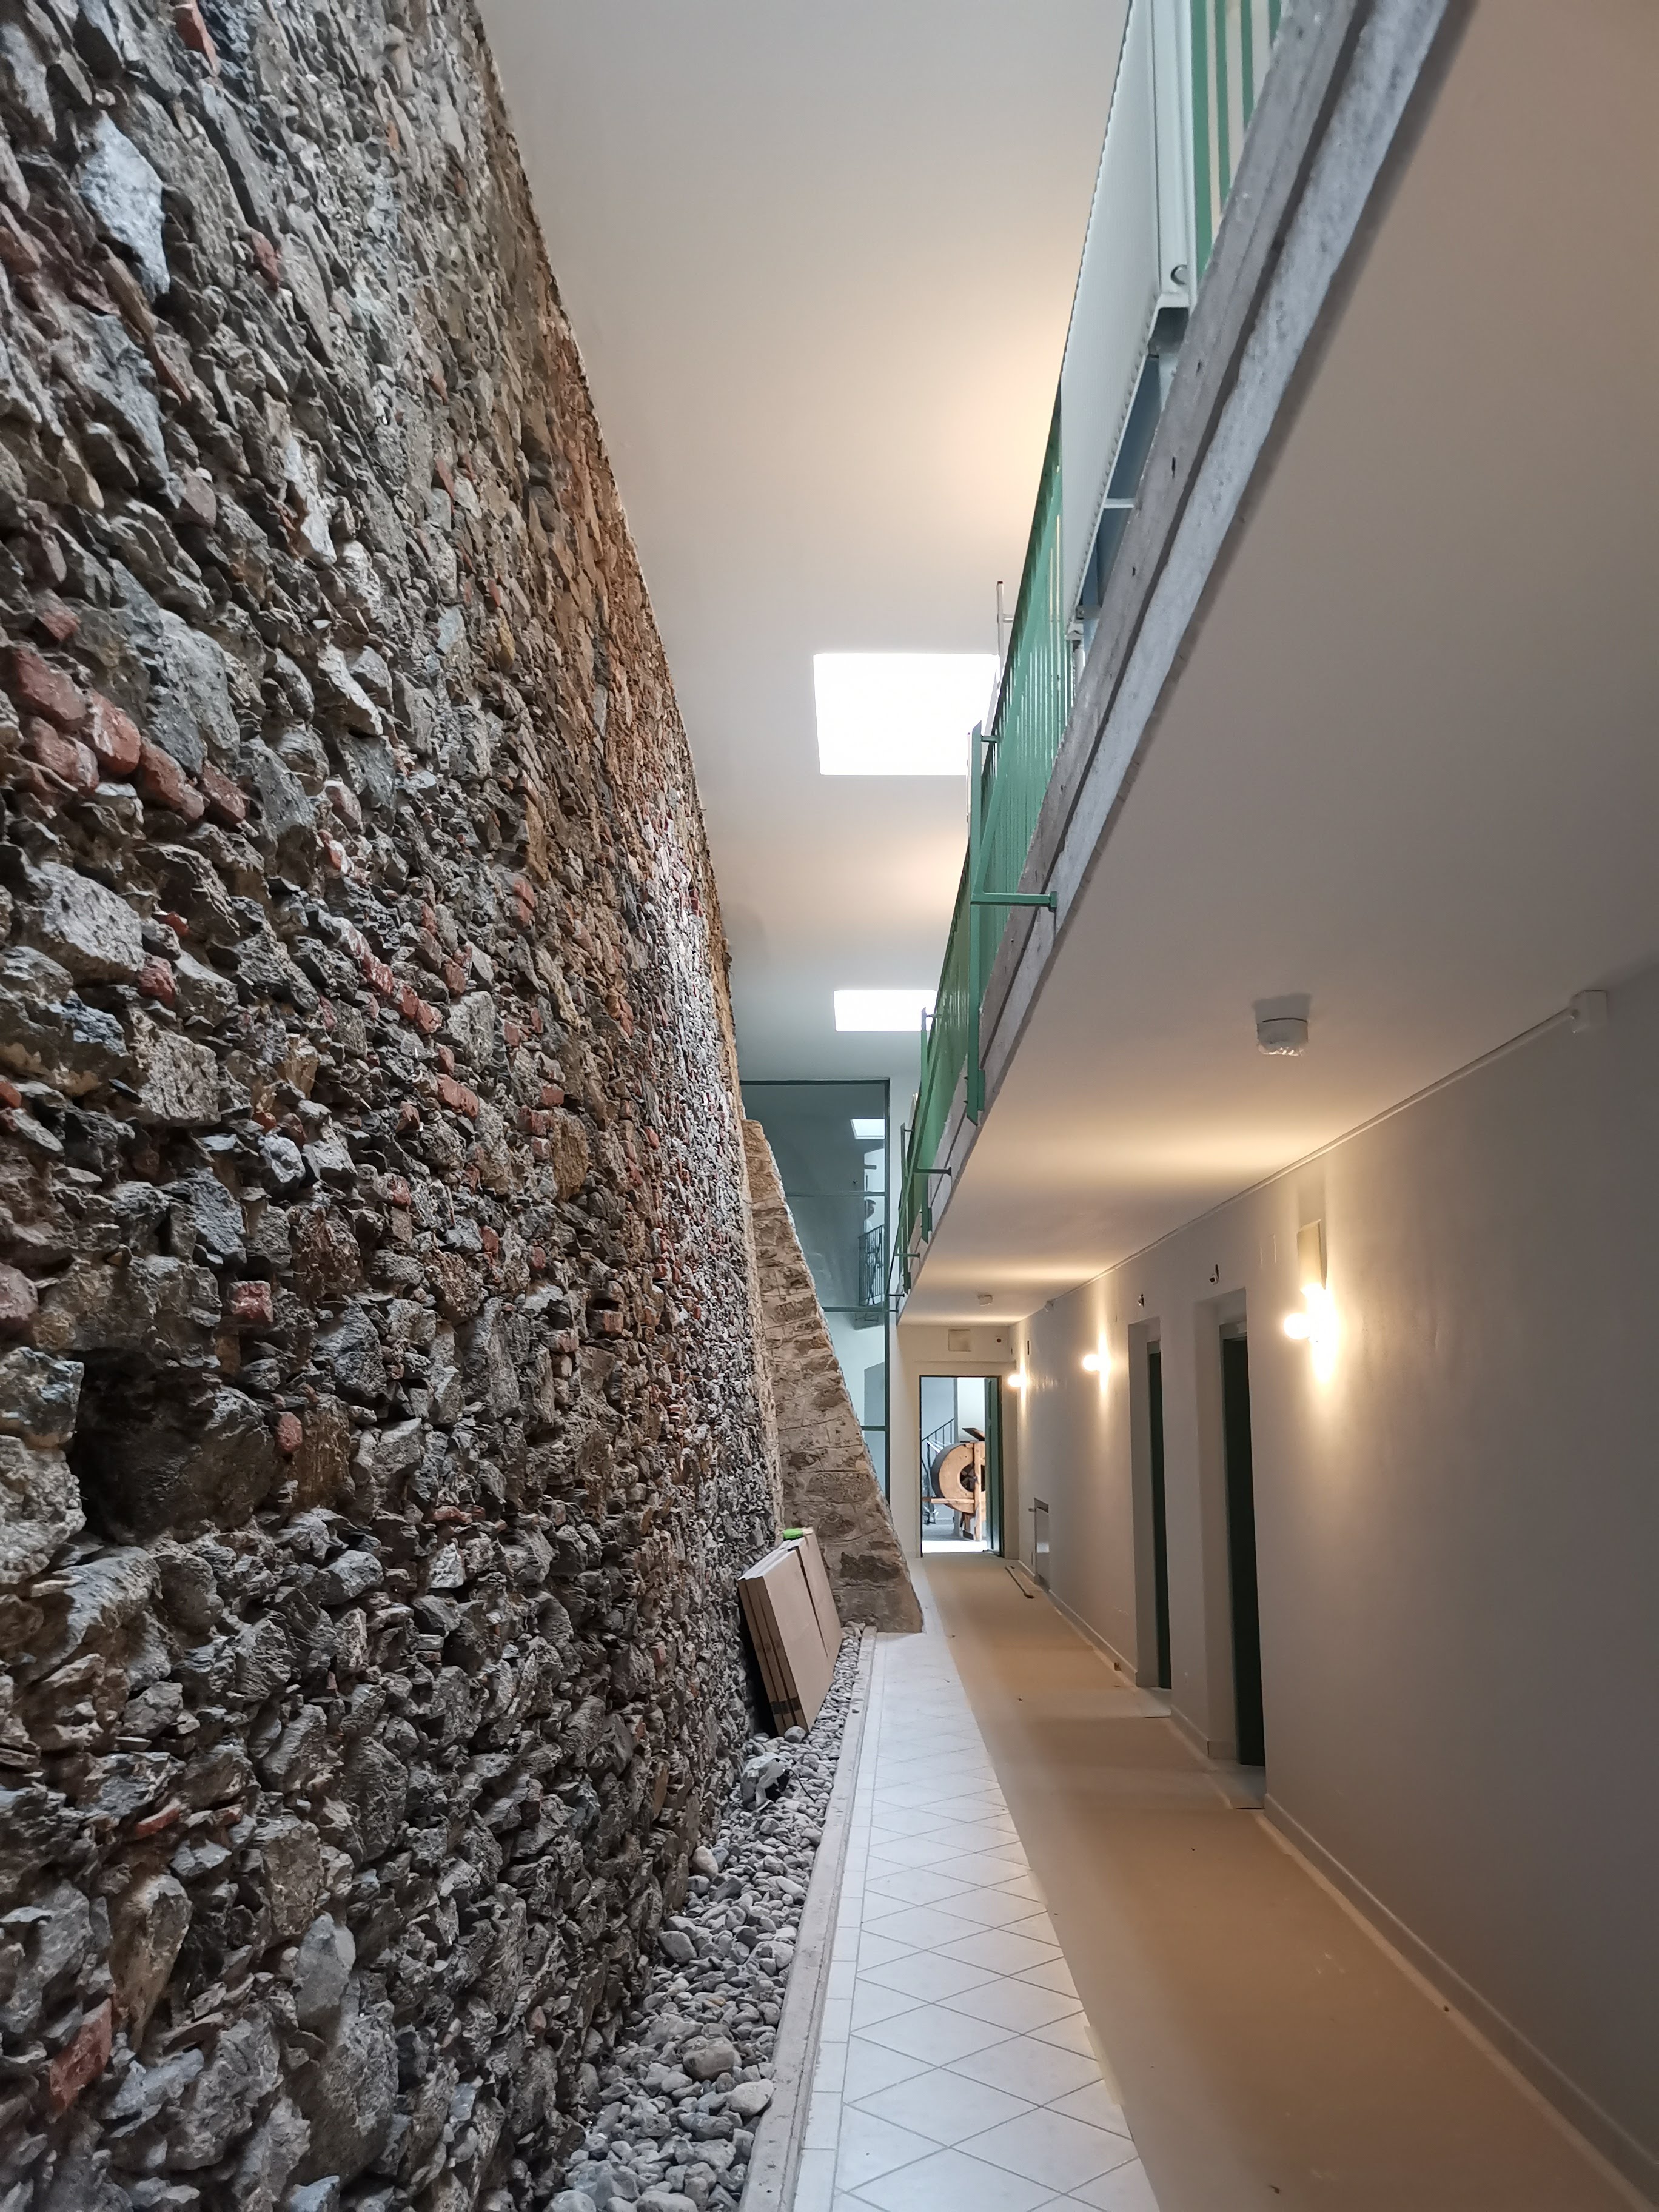 Eine Innenansicht eines Korridors. Auf der linken Seite verläuft eine alte Steinmauer, die rechte Seite ist hoch und modern